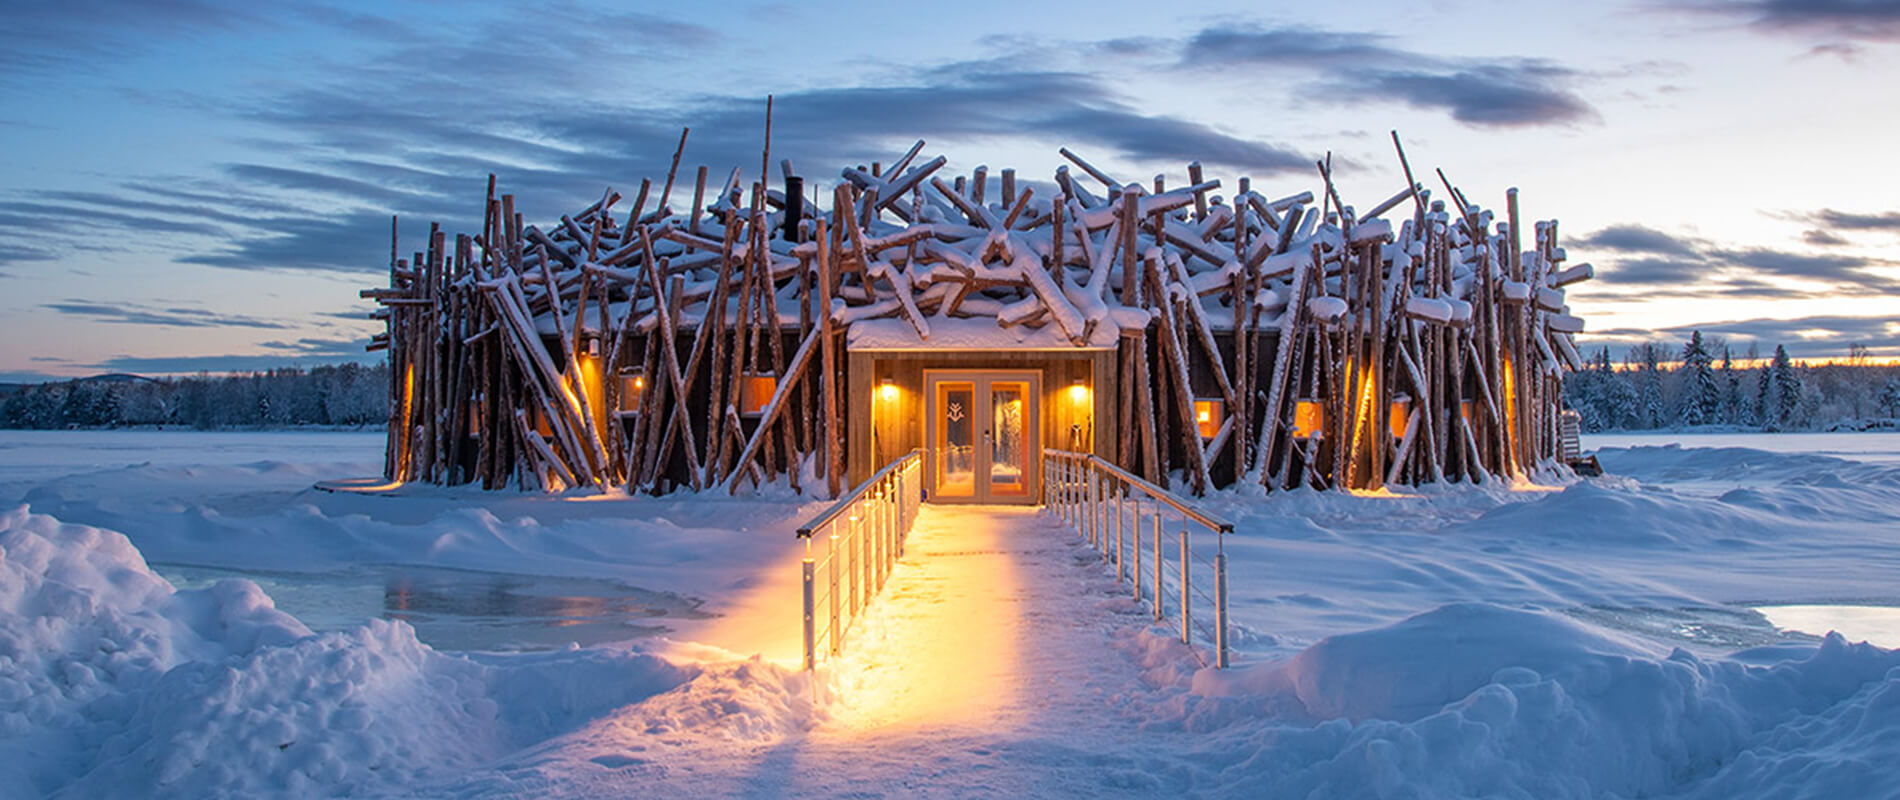 Arctic Bath, l’hotel galleggiante nel cuore della Lapponia Svedese